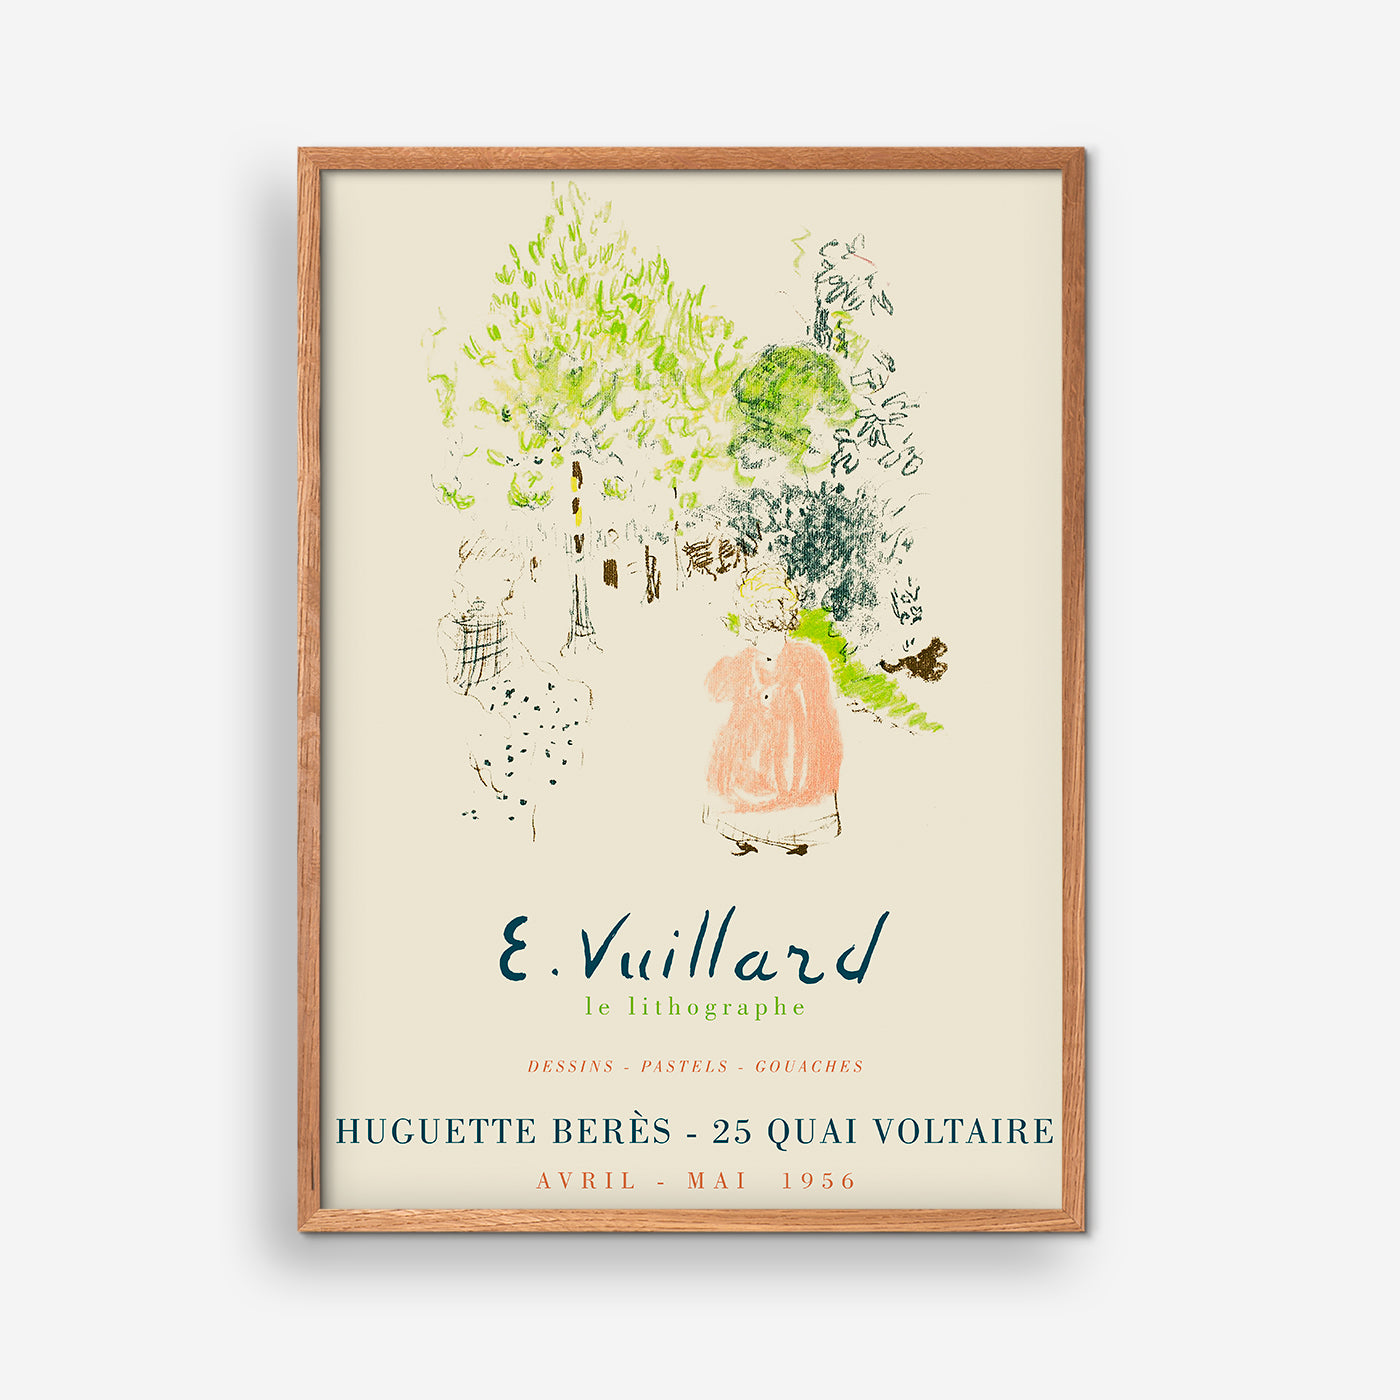 E. Vuillard Exhibition poster